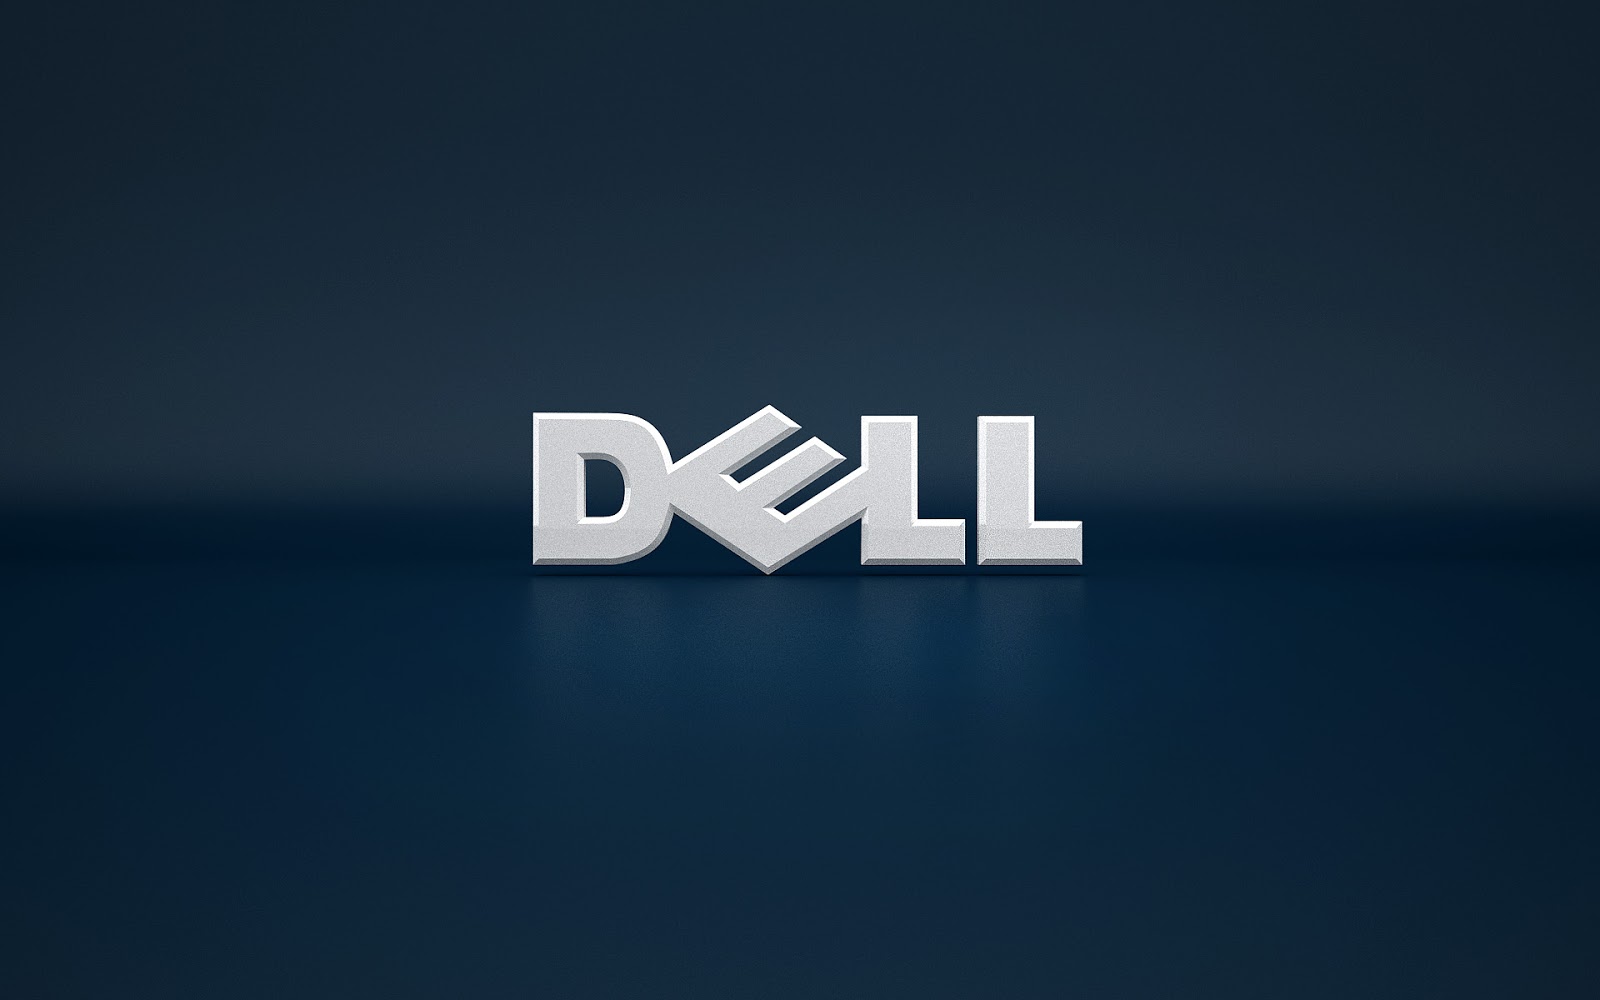 Dell 1 Dell Way Wallpaper | PicsWallpaper.com